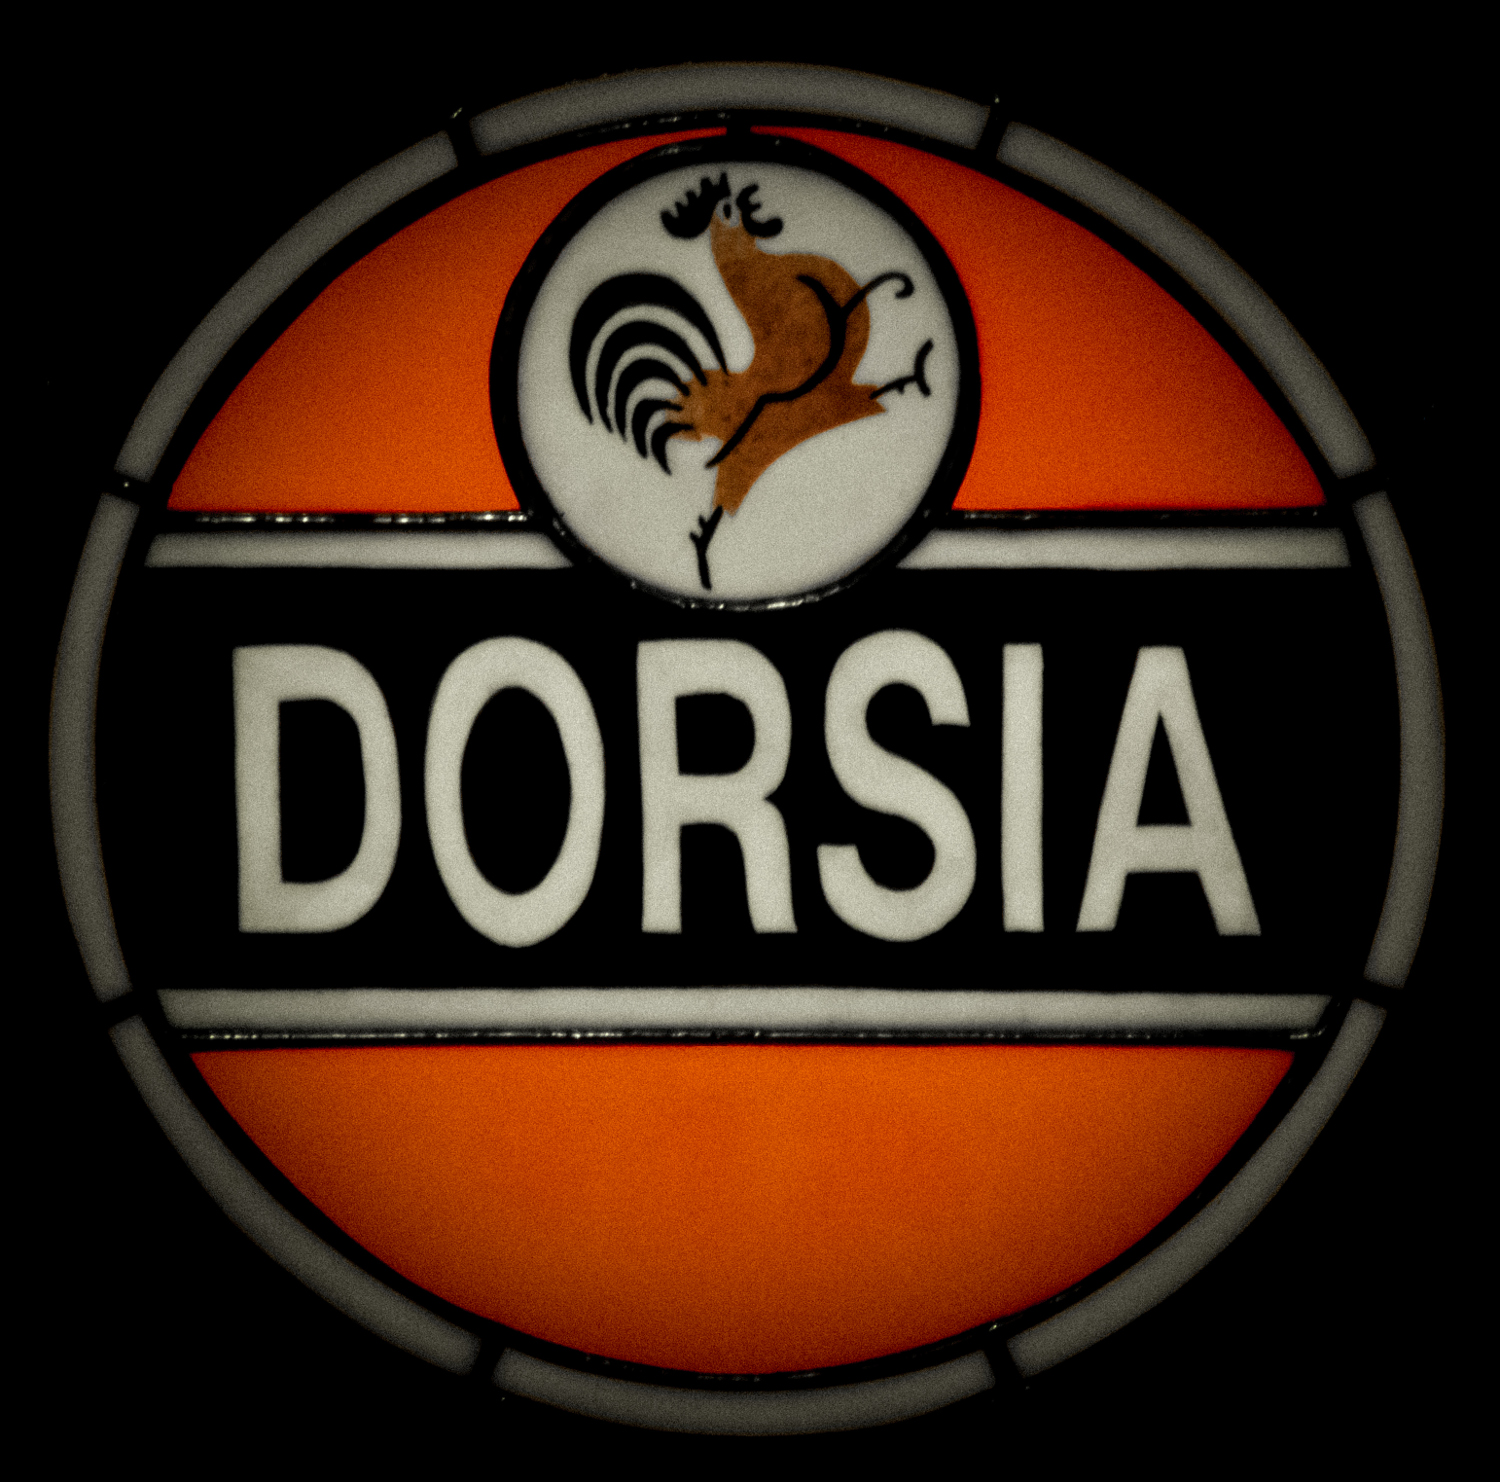 DORSIA